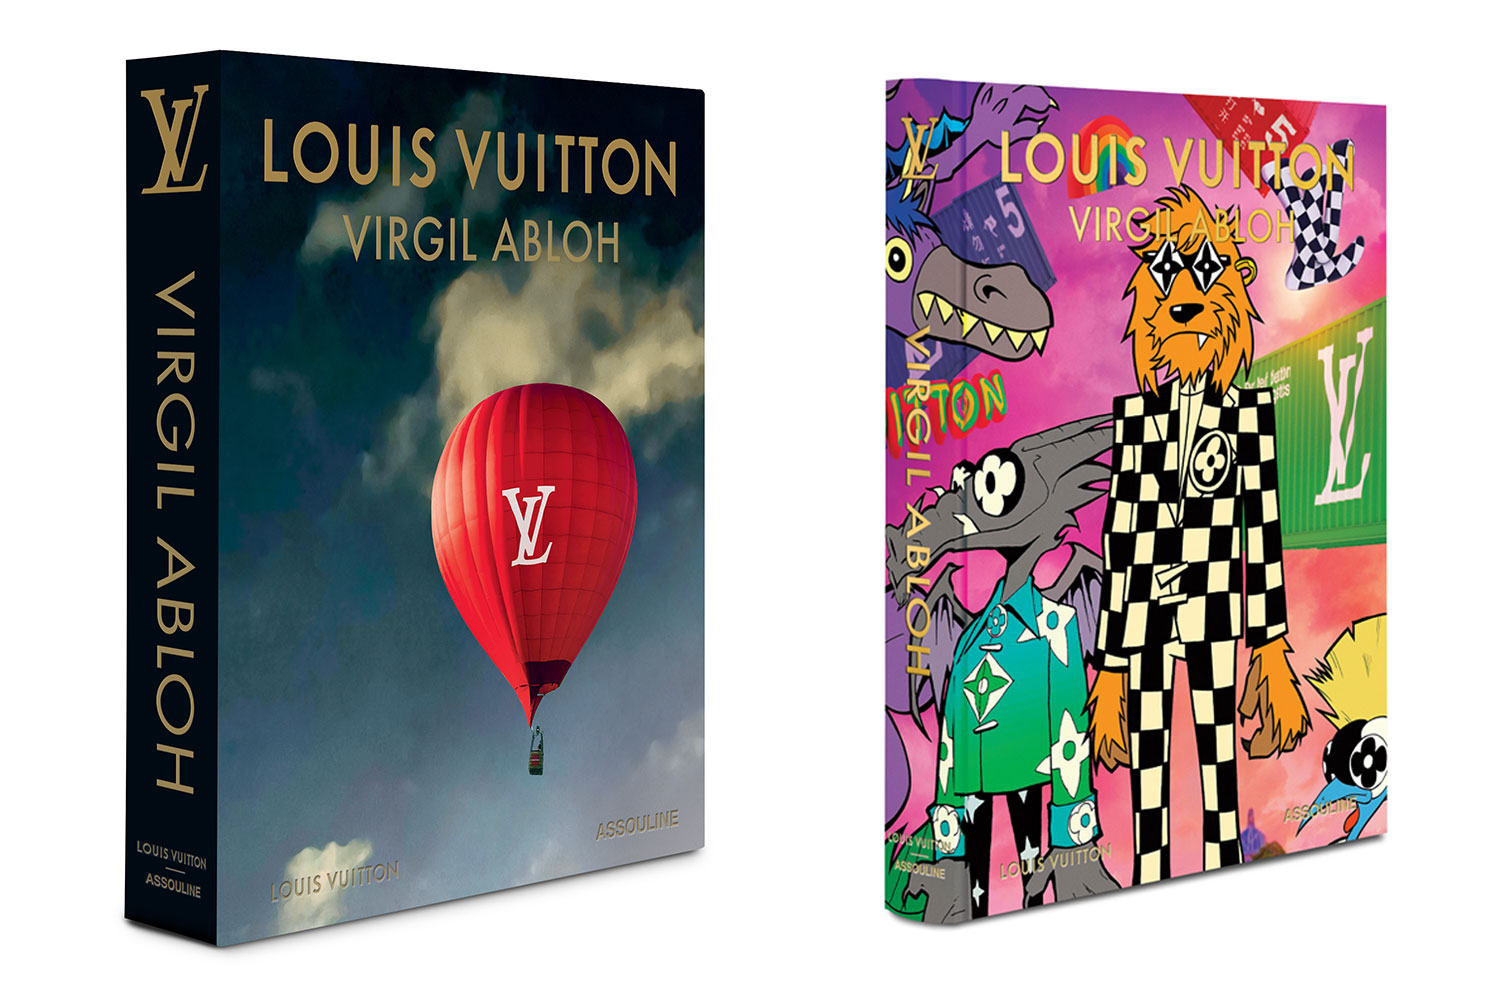 Louis Vuitton Virgil Abloh book covers